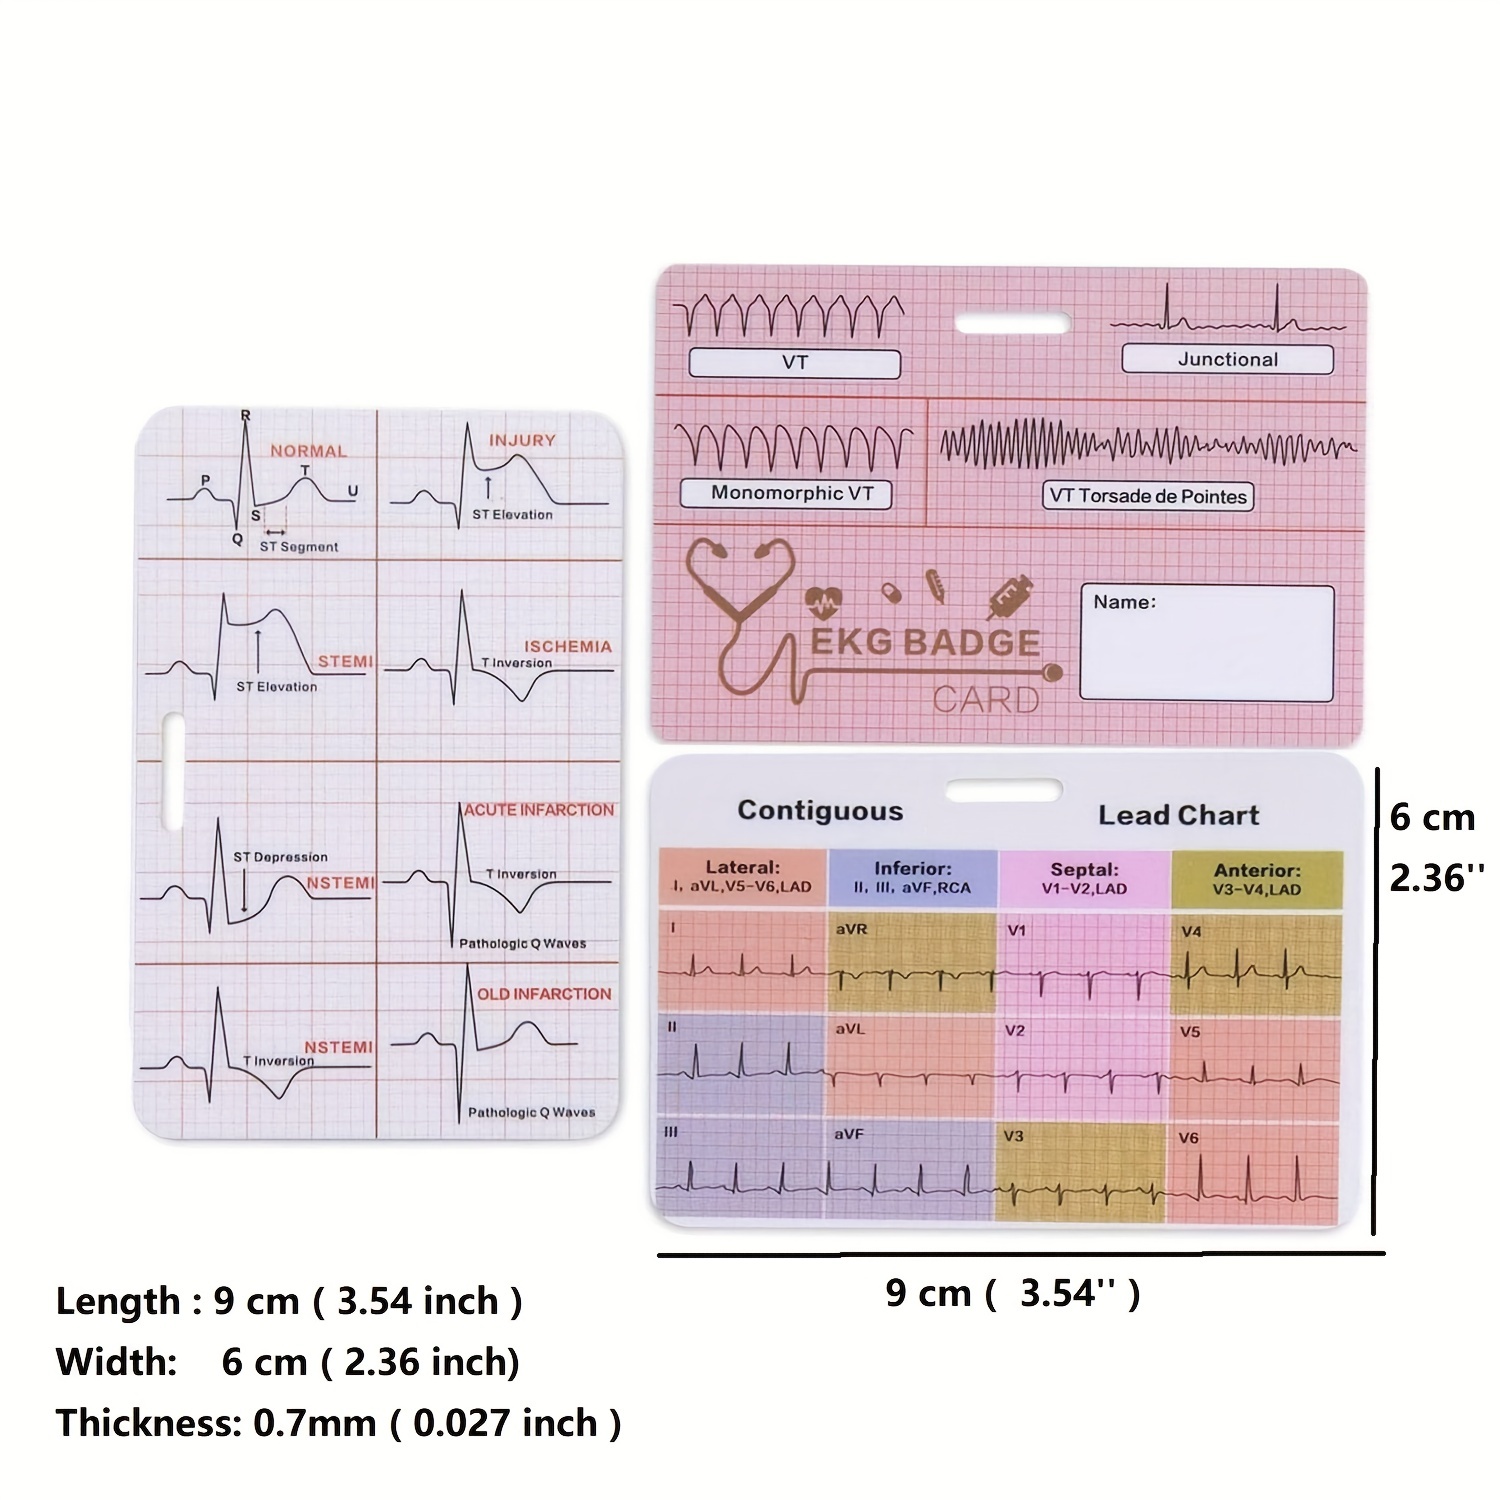 ACLS EKG rhythms & interpretation